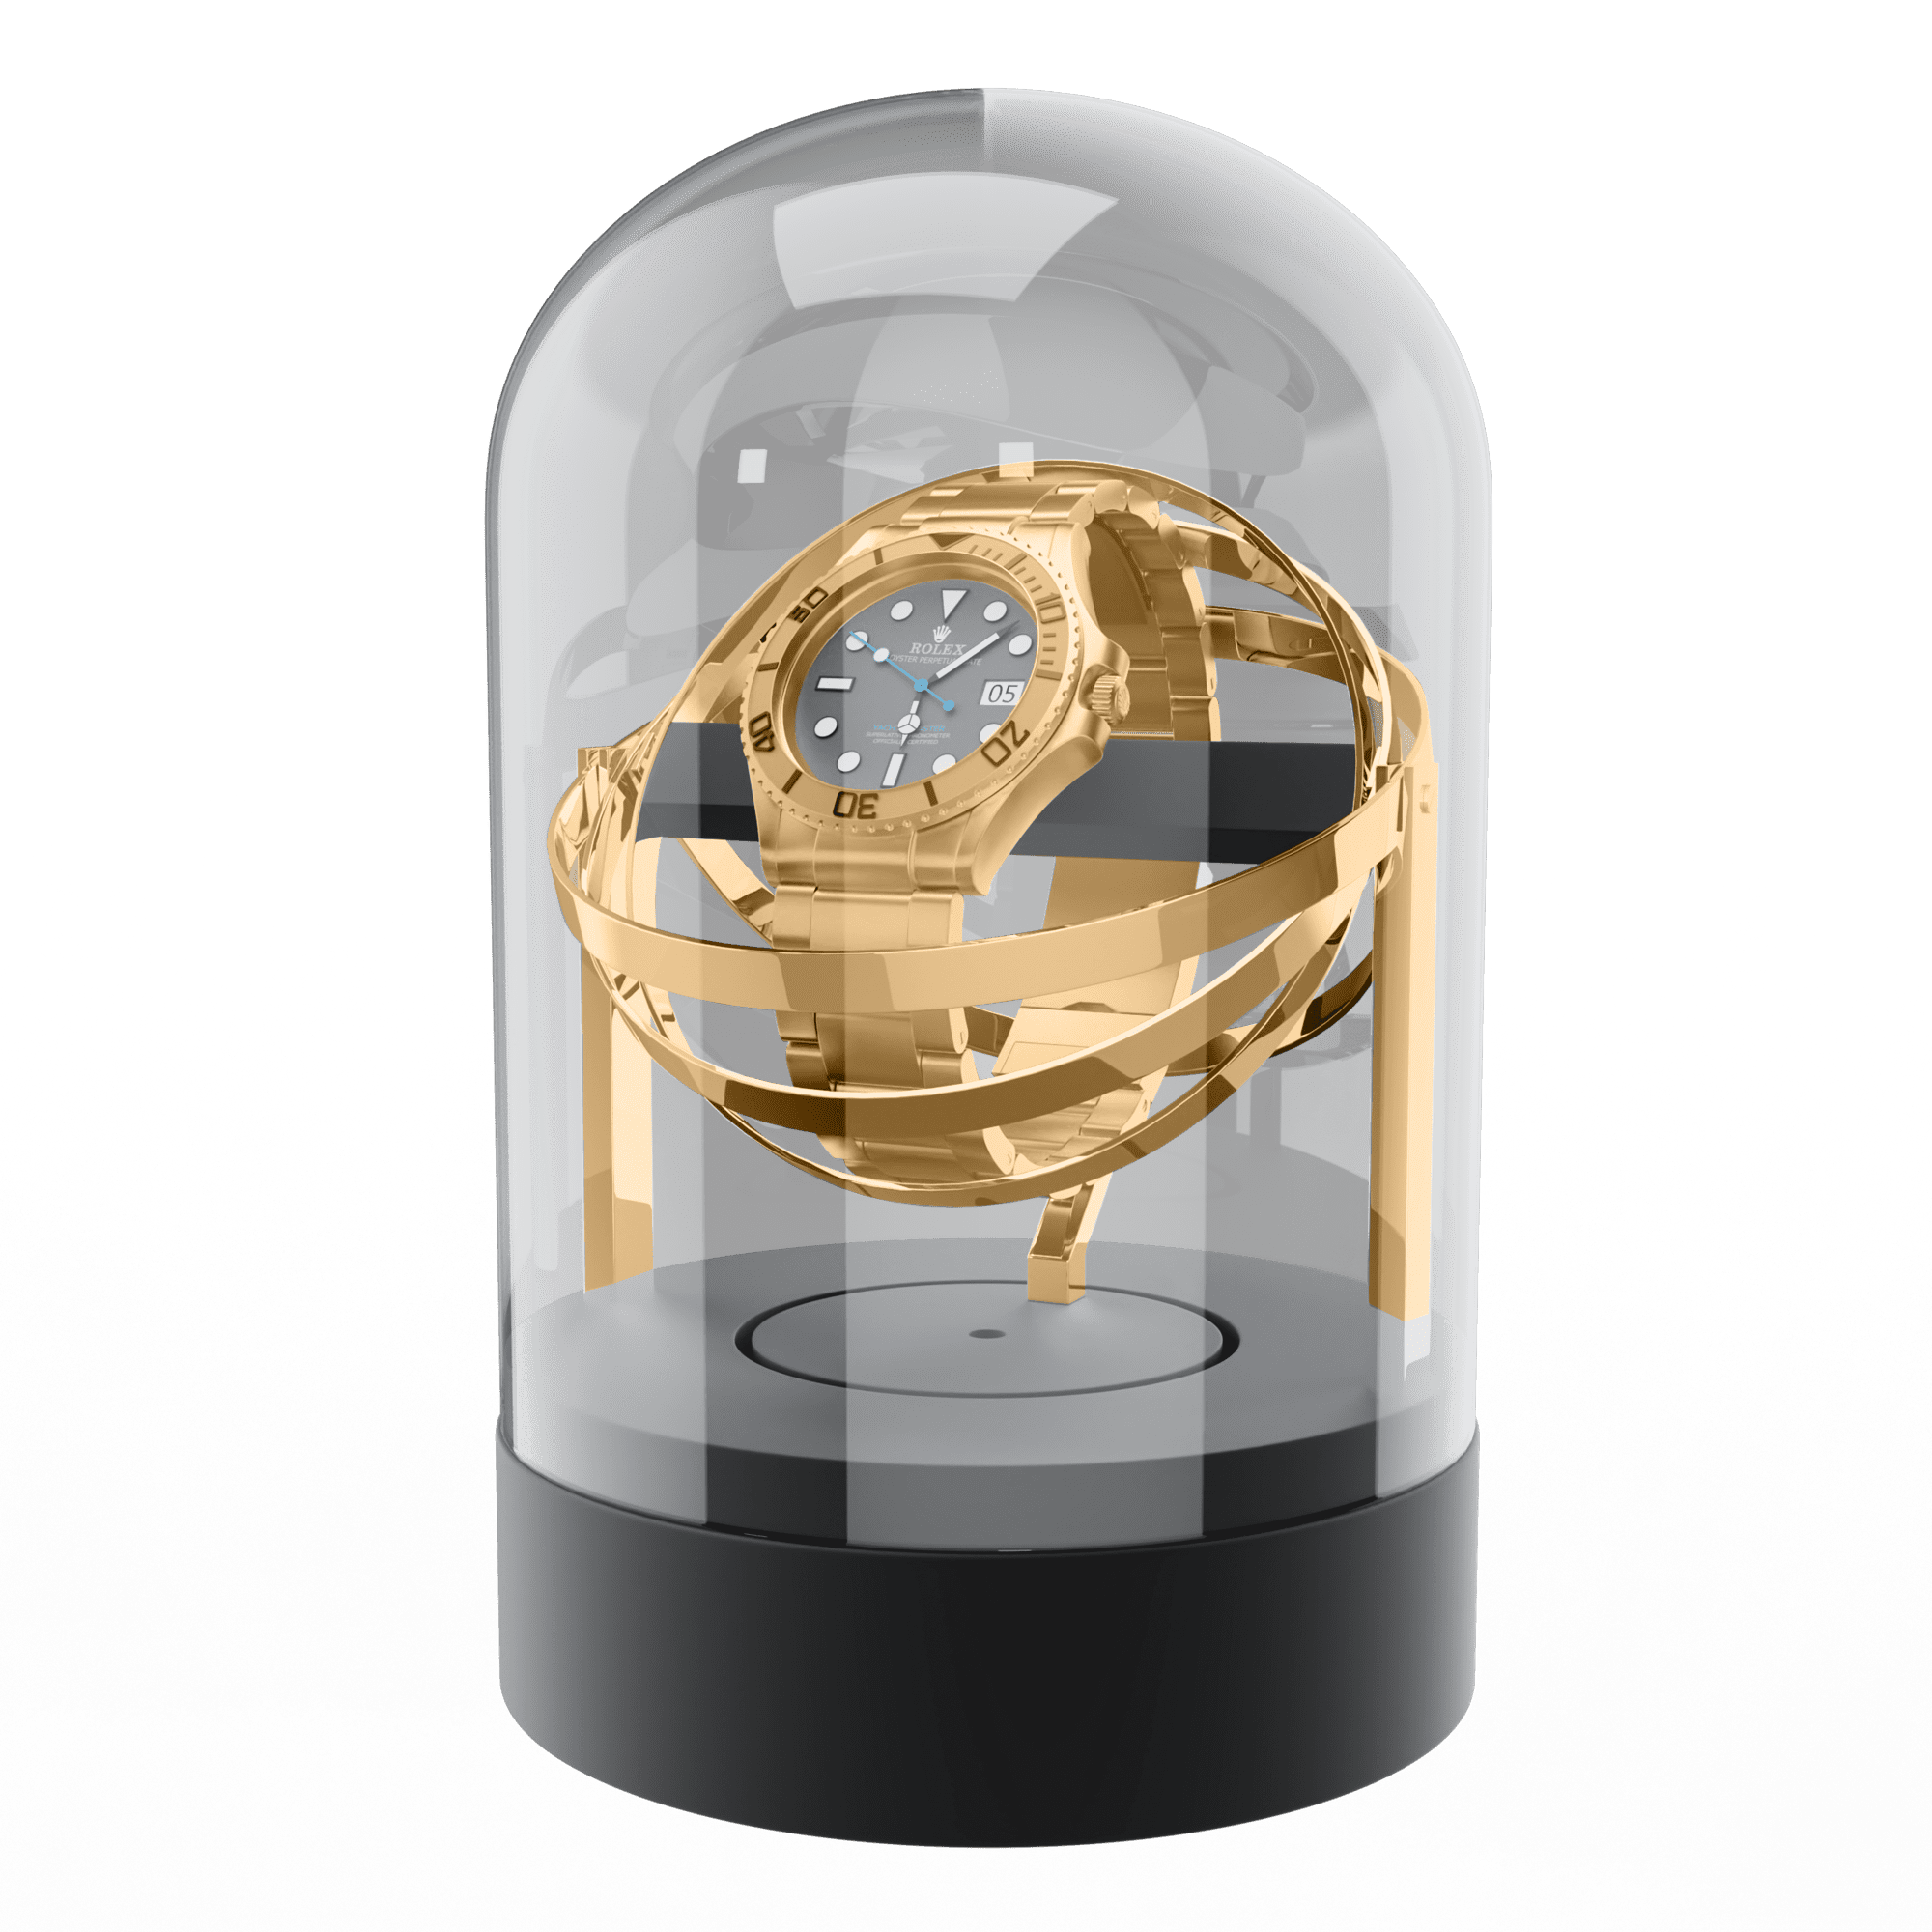 Gold Watch Winder for Rolex Watches - Gyro Orbit Box